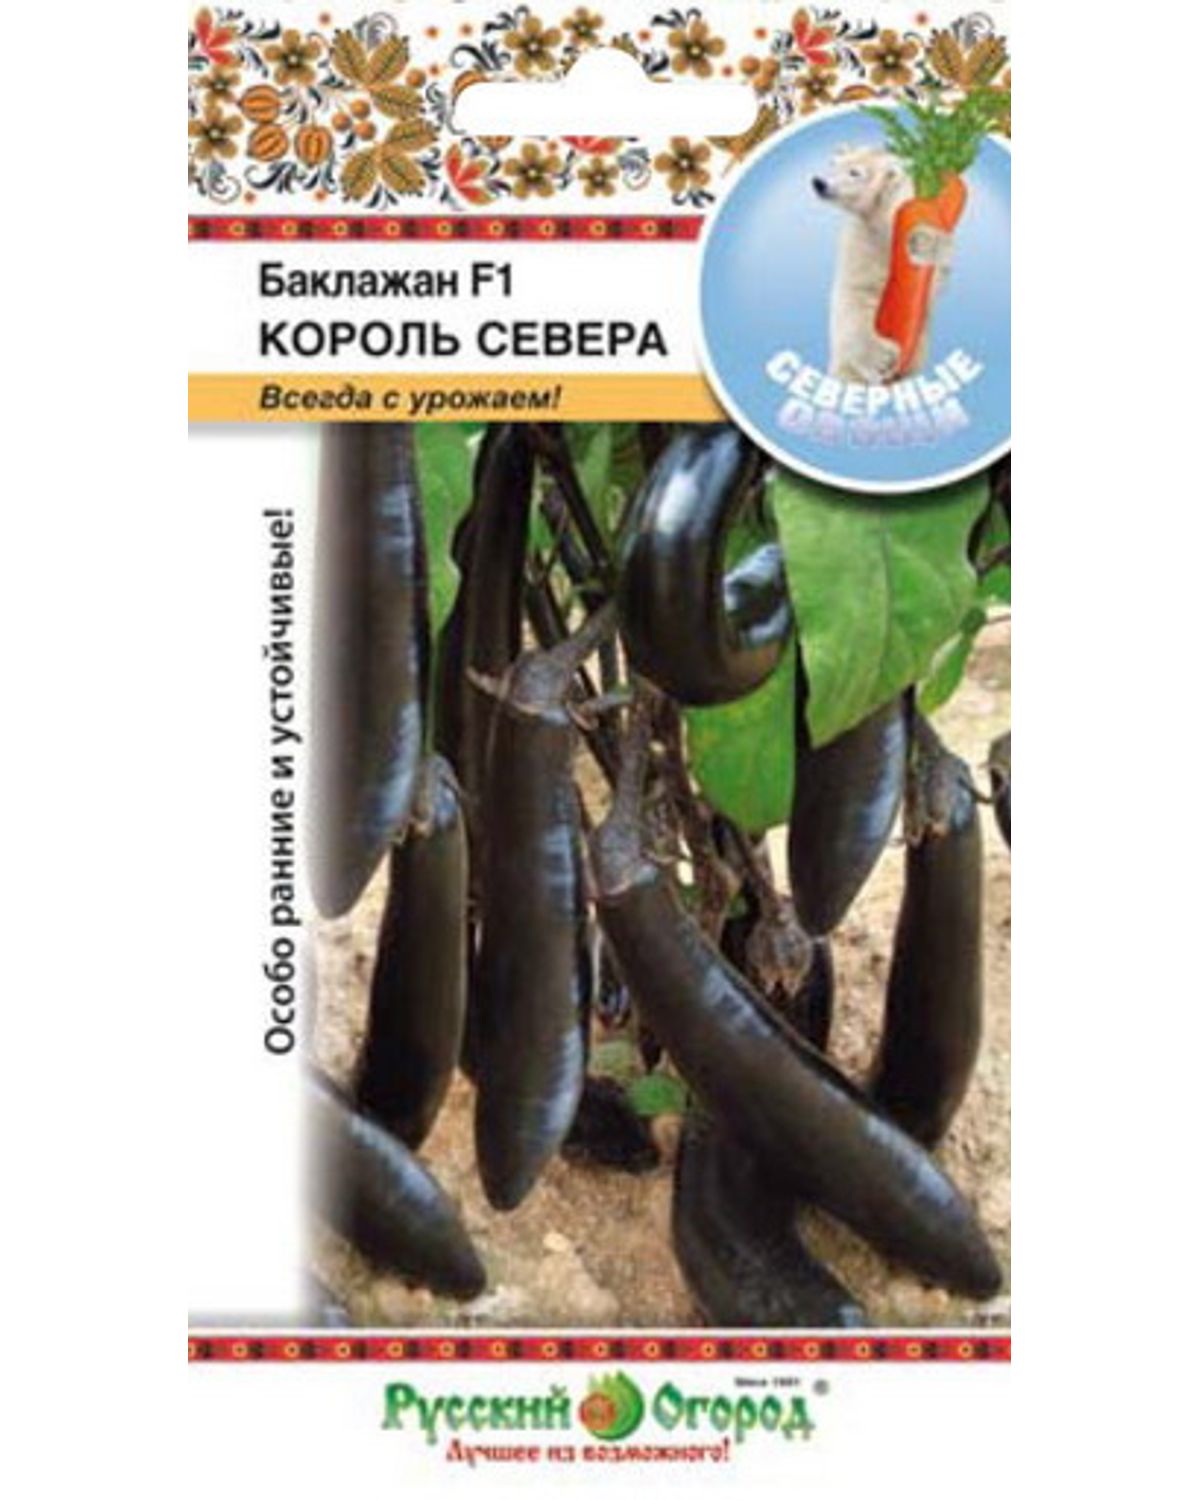 Семена баклажан Русский огород Король Севера F1 344903 1 уп. - отзывы покупателей на Мегамаркет